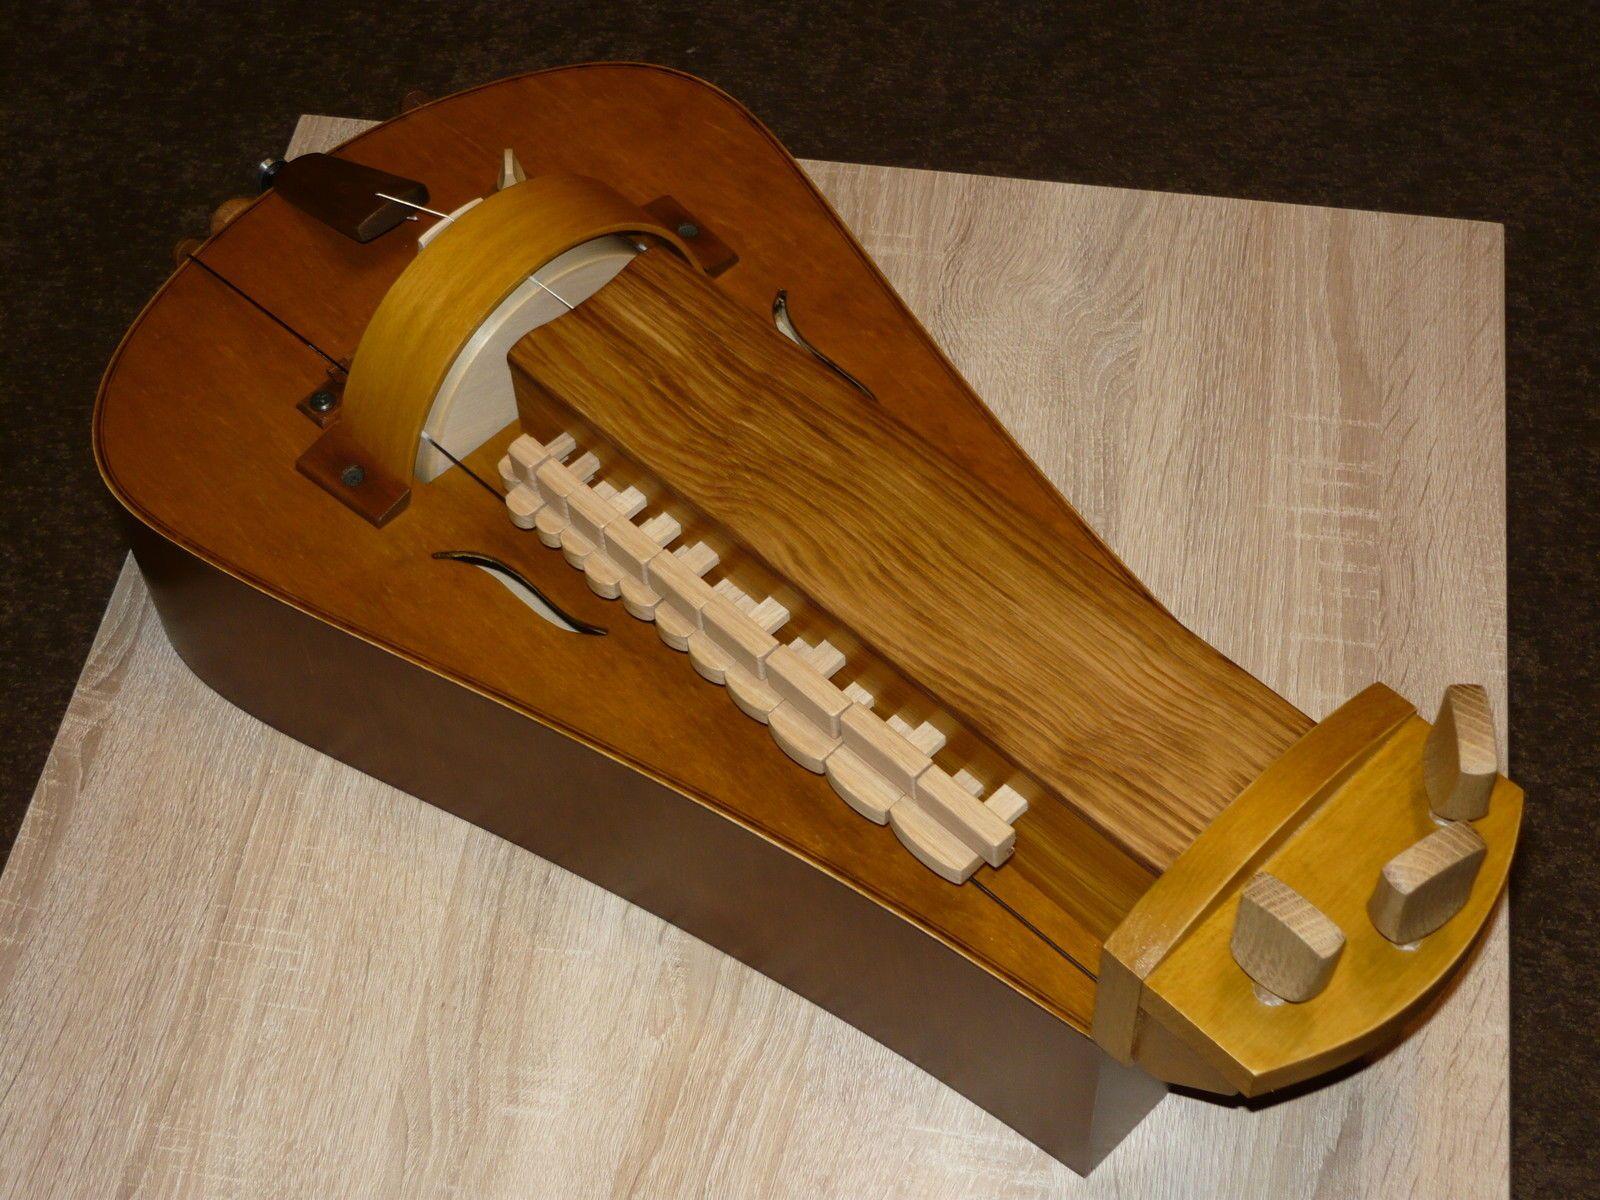 Hurdy gurdy. Woodworking. Hurdy gurdy, Violin, Musical Instruments